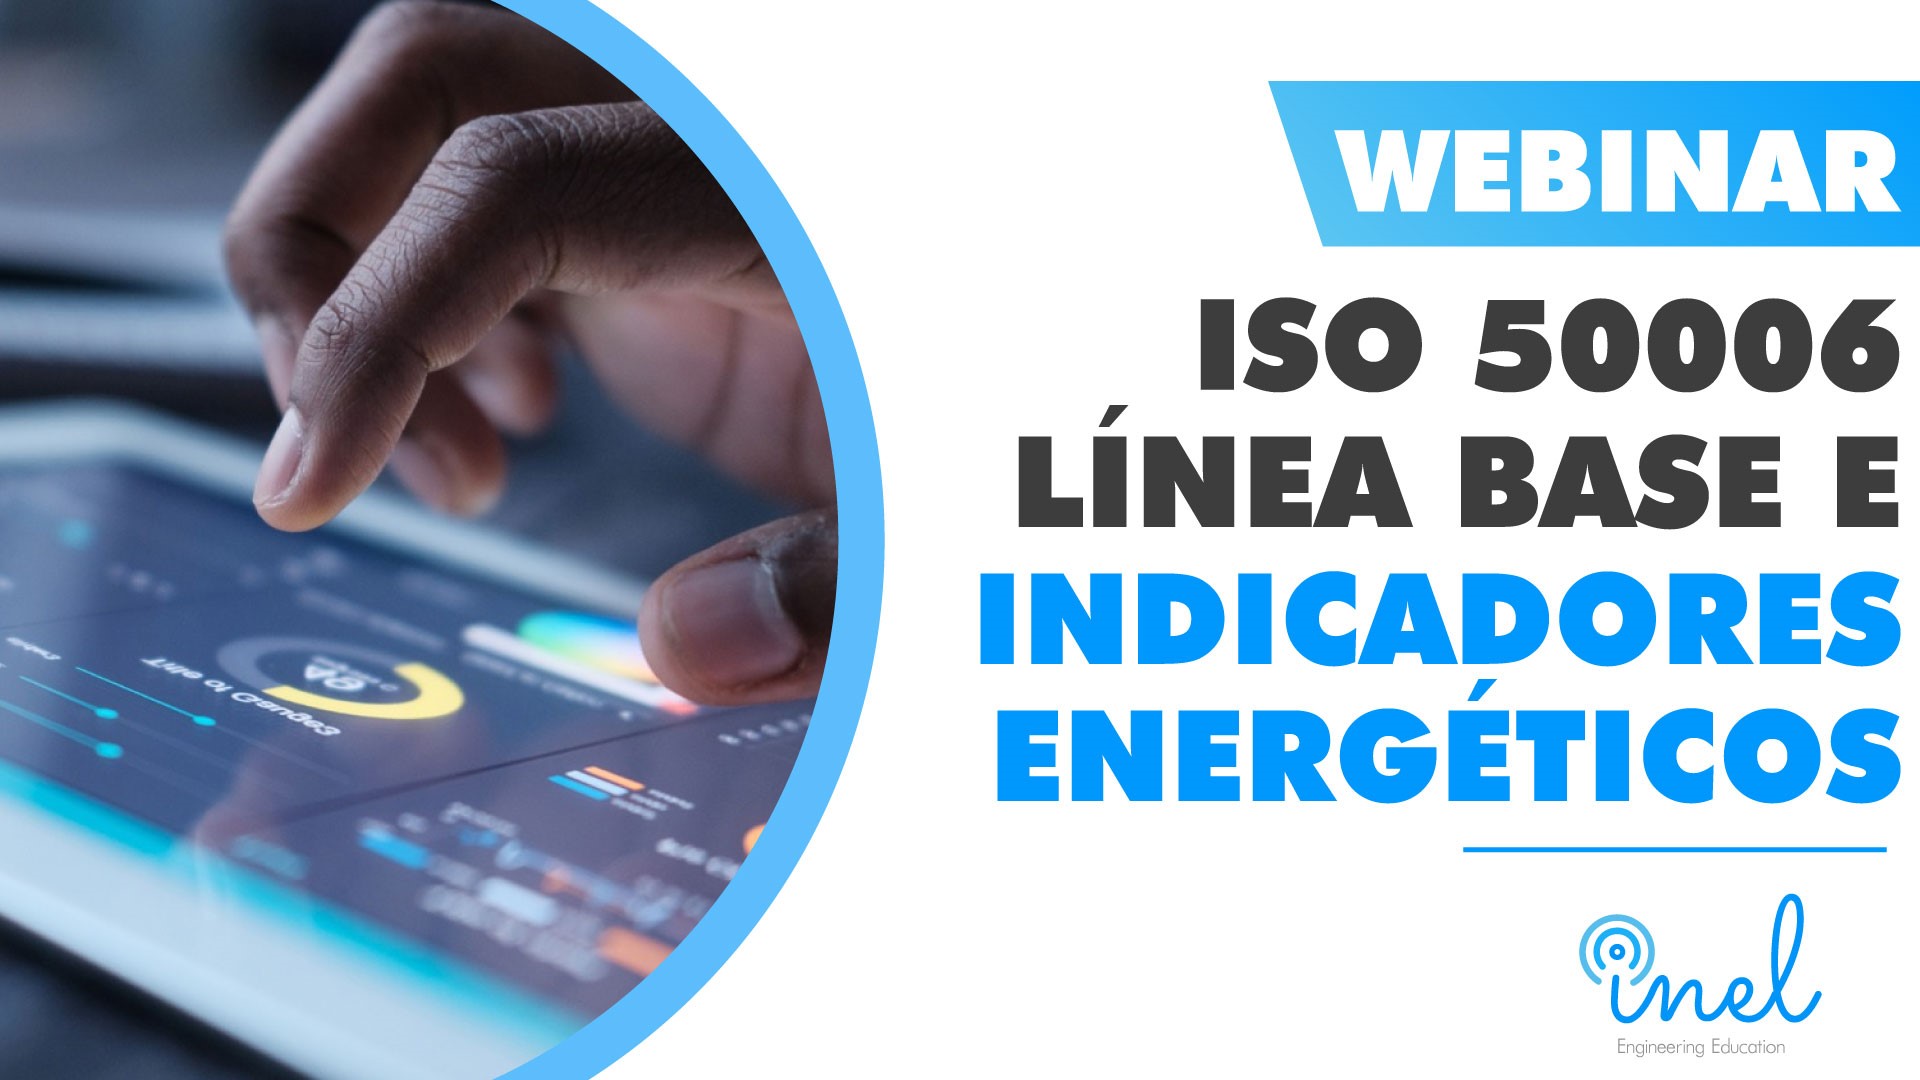 Webinar ISO 50006 Línea Base e Indicadores Energéticos